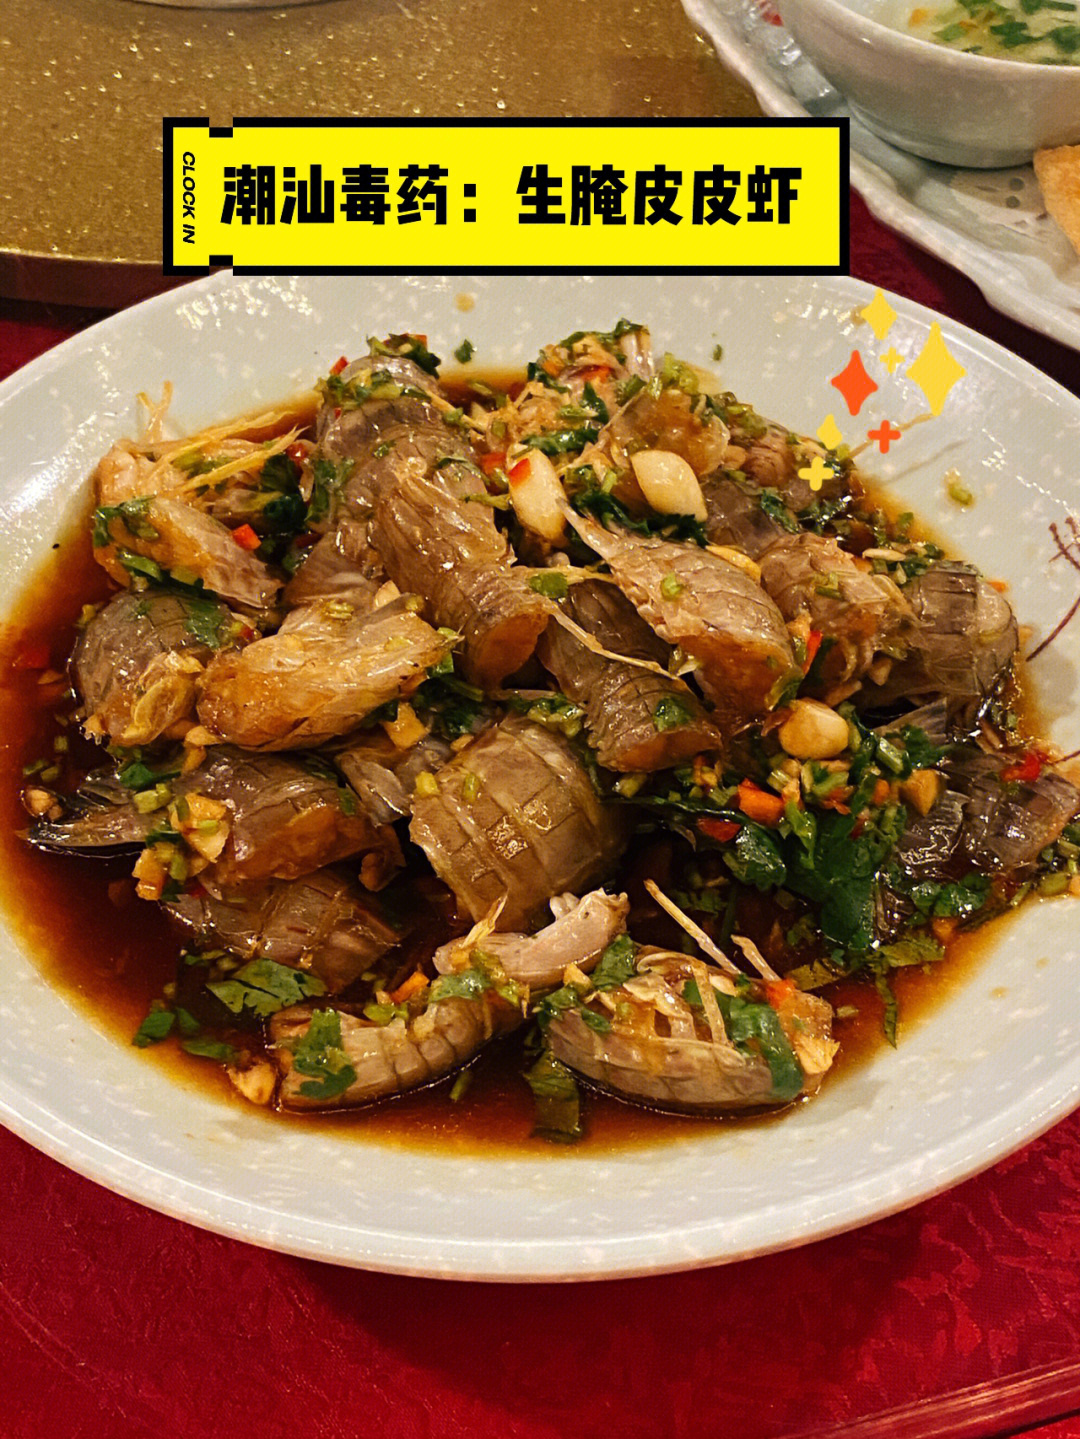 广州探店丨身在大排档的超好吃生腌皮皮虾